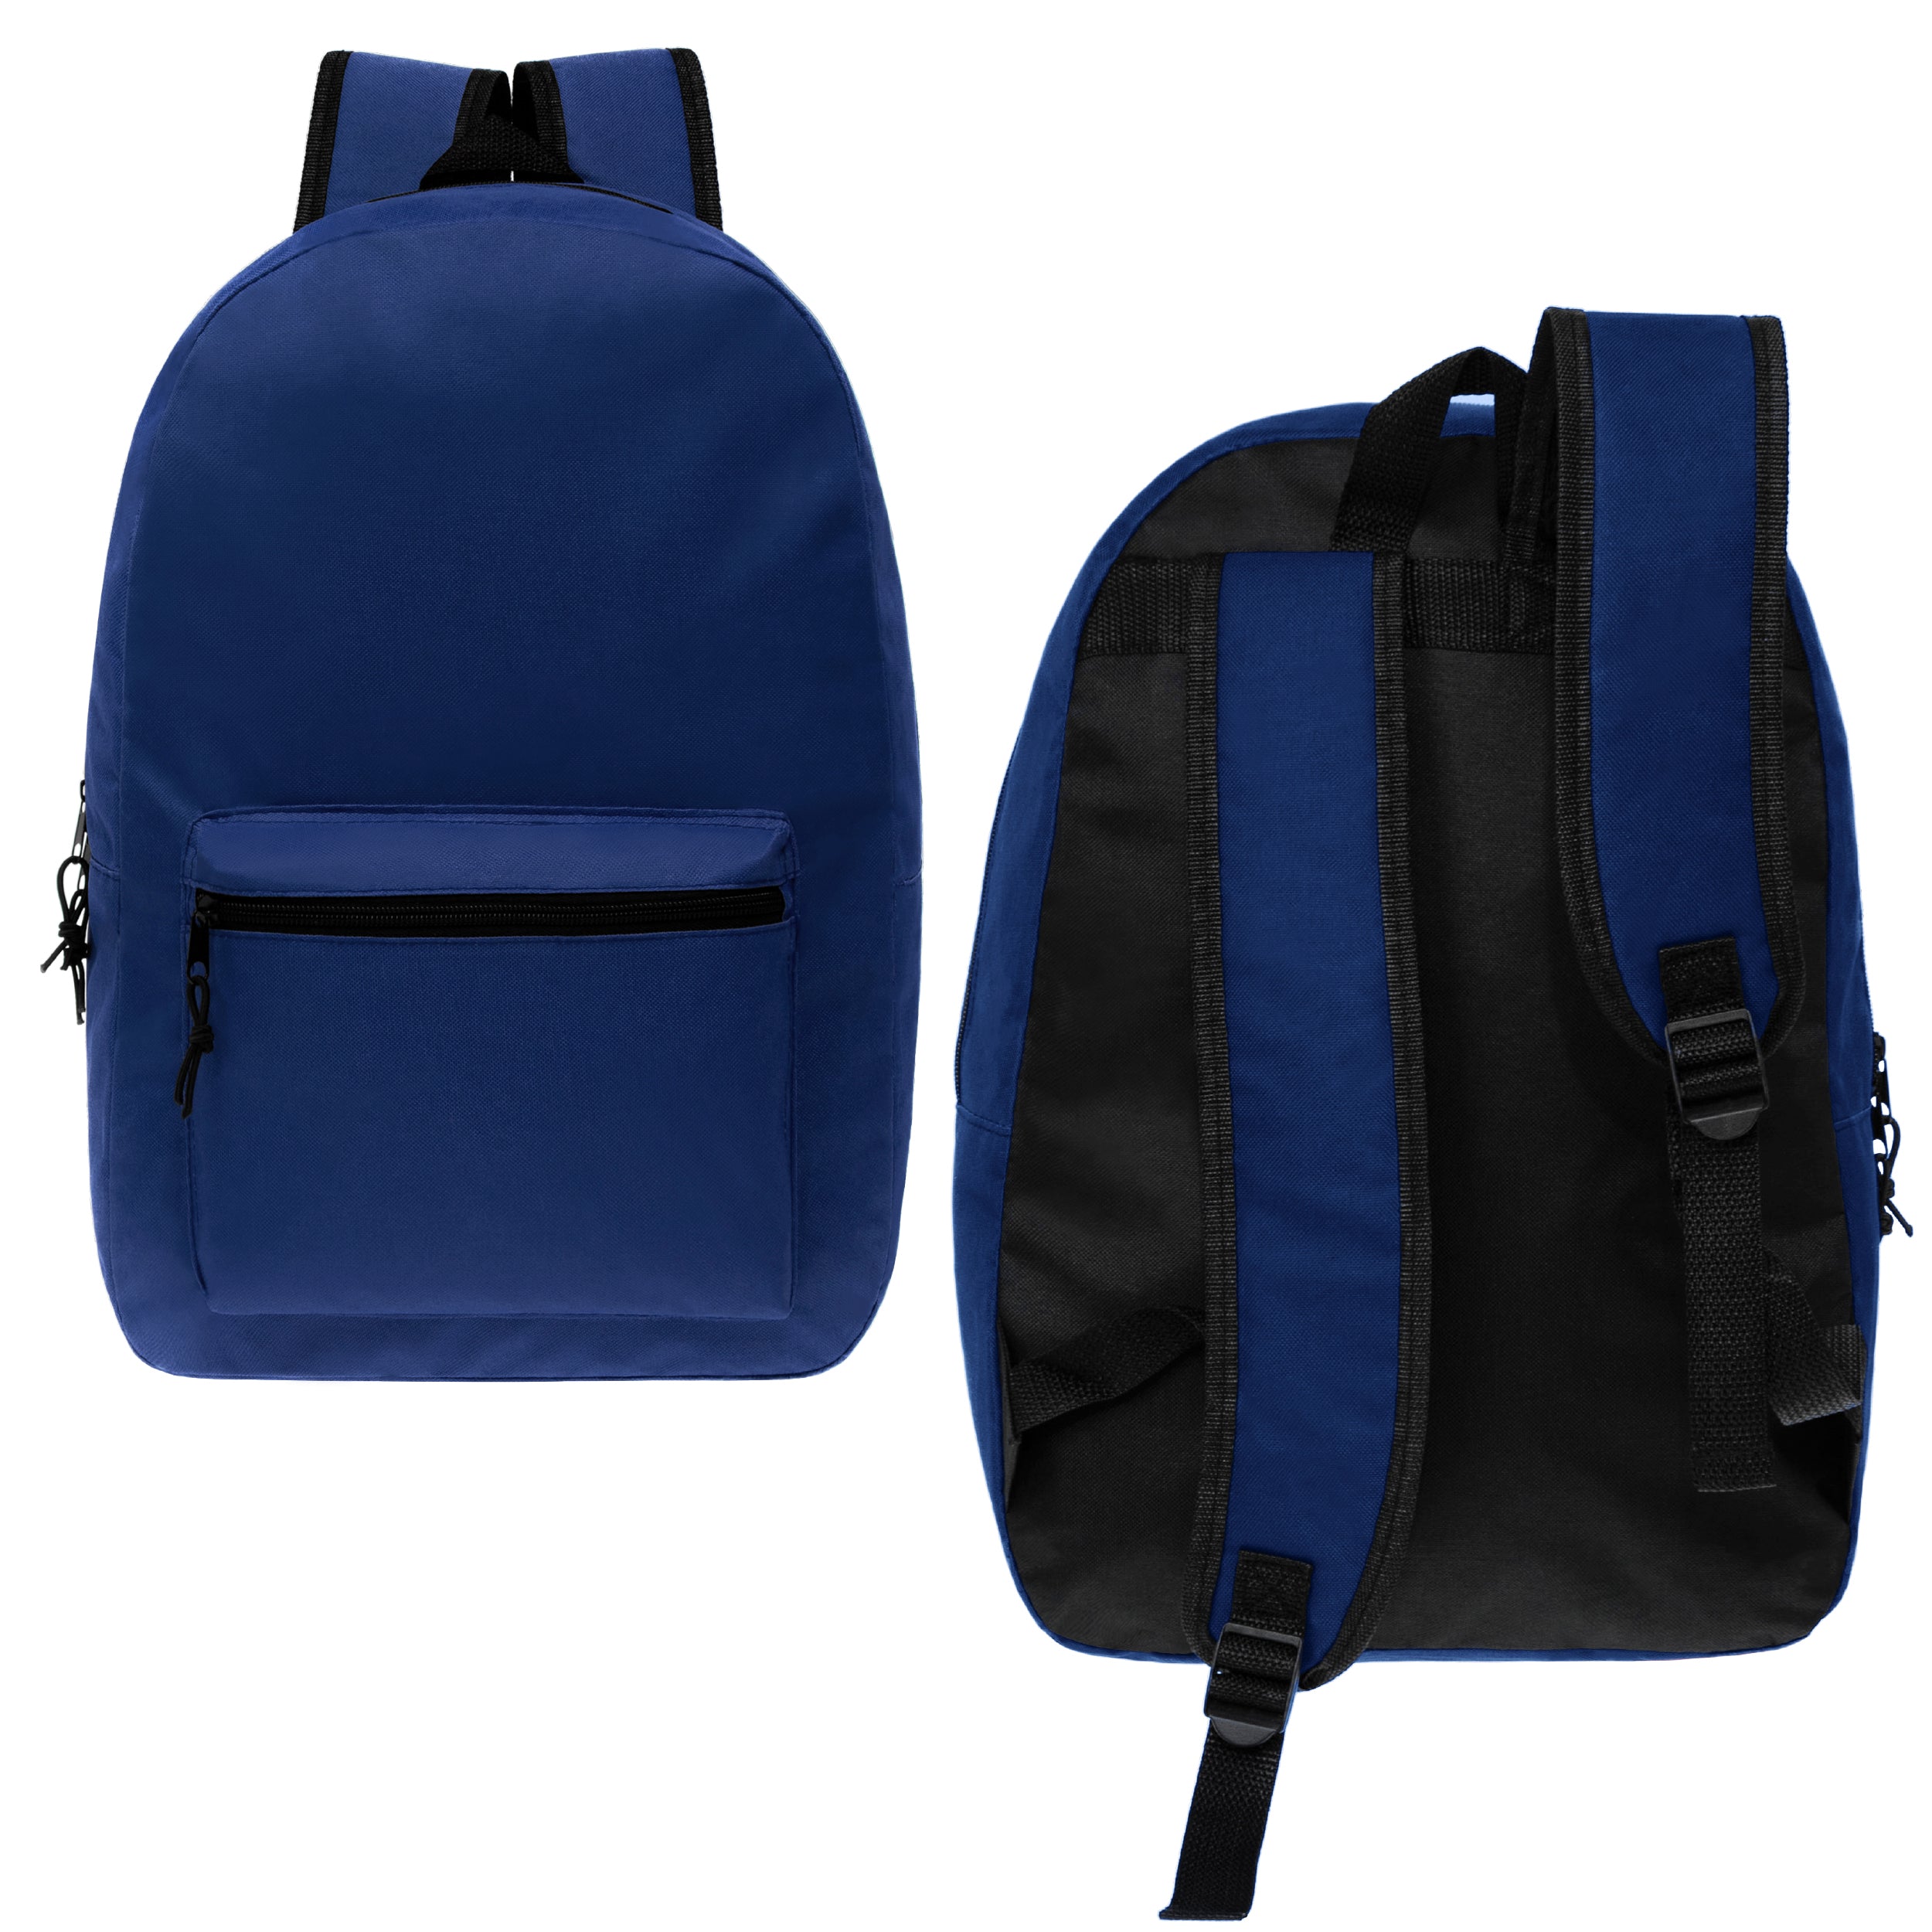 17" Kids Basic Wholesale Backpack in Navy - Bulk Case of 24 Backpacks